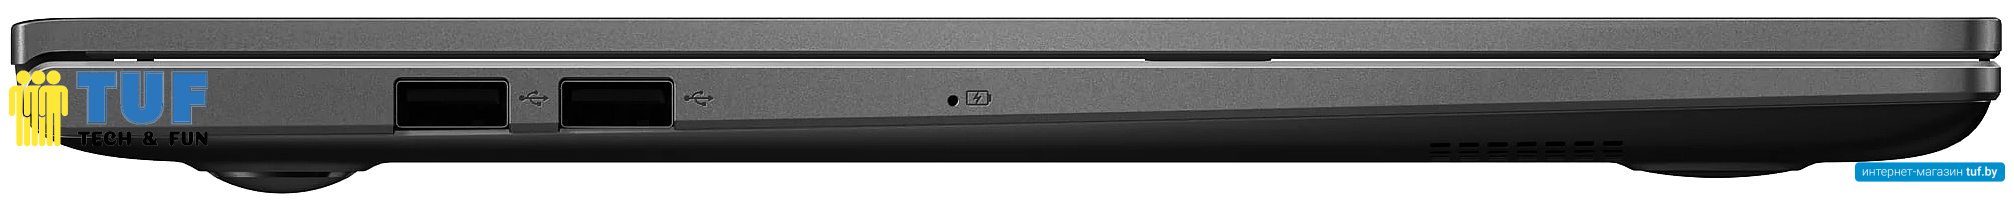 Ноутбук ASUS VivoBook 15 K513EA-BN996